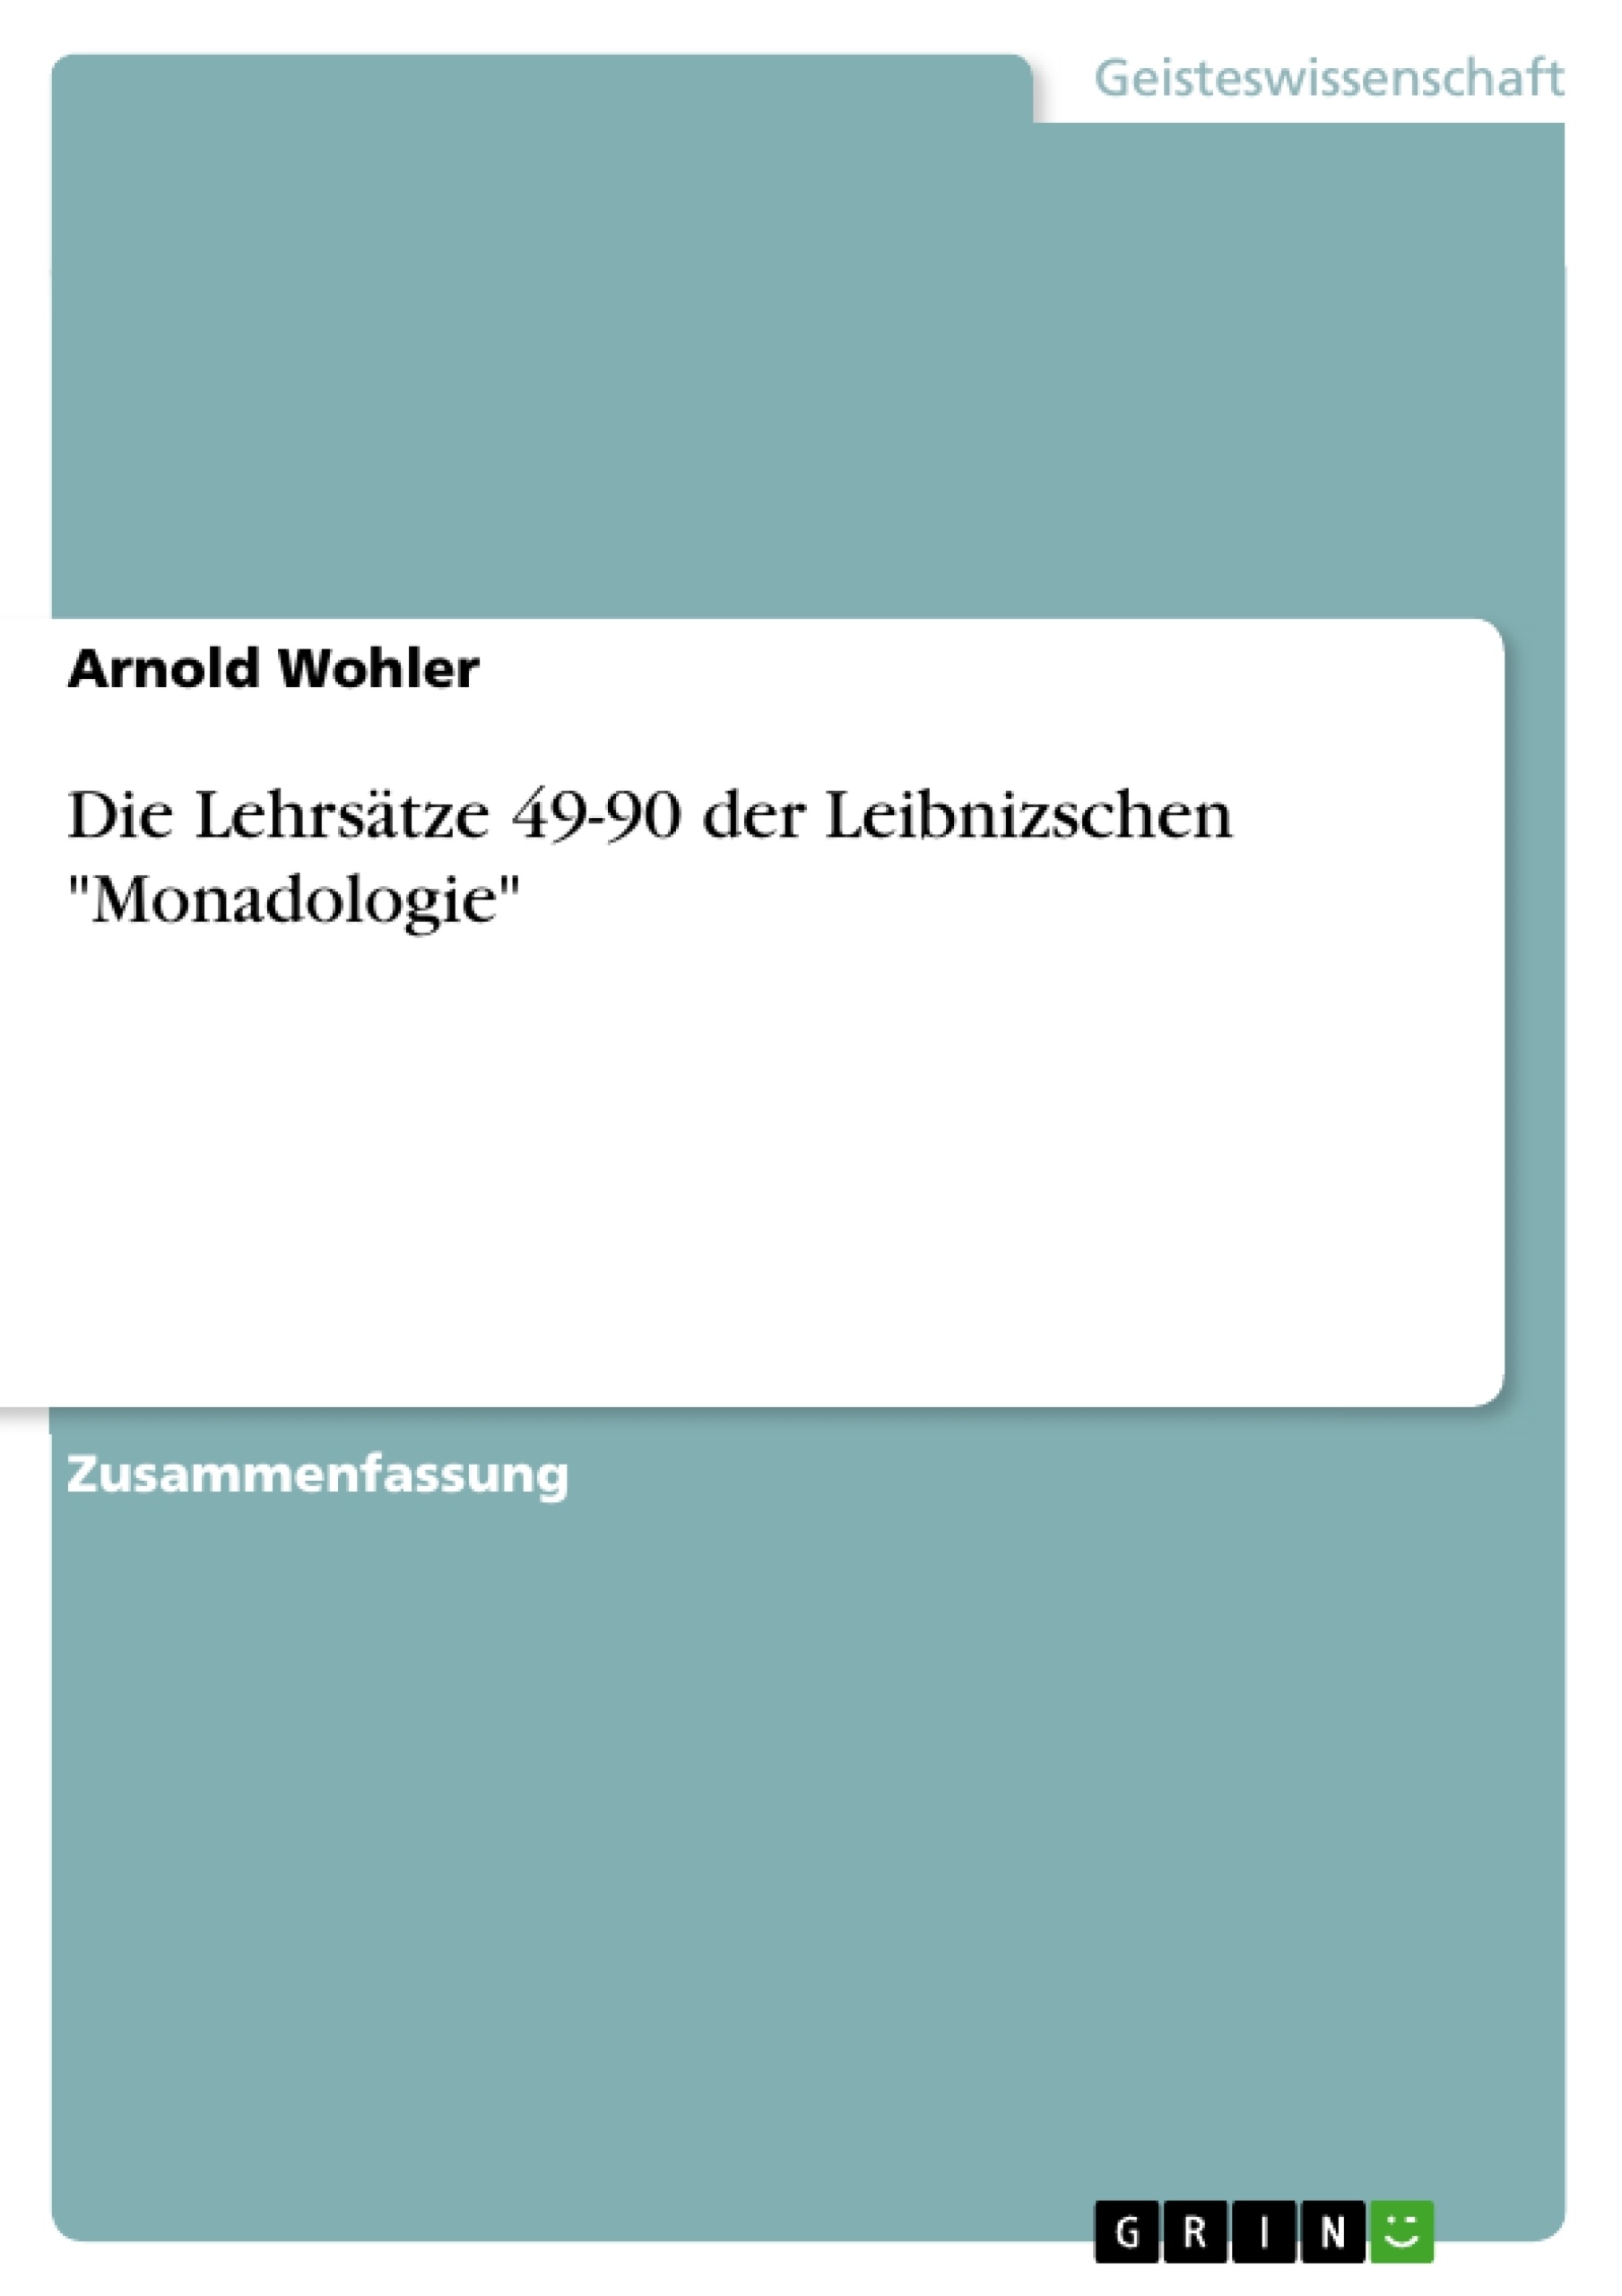 Título: Die Lehrsätze 49-90 der Leibnizschen "Monadologie"